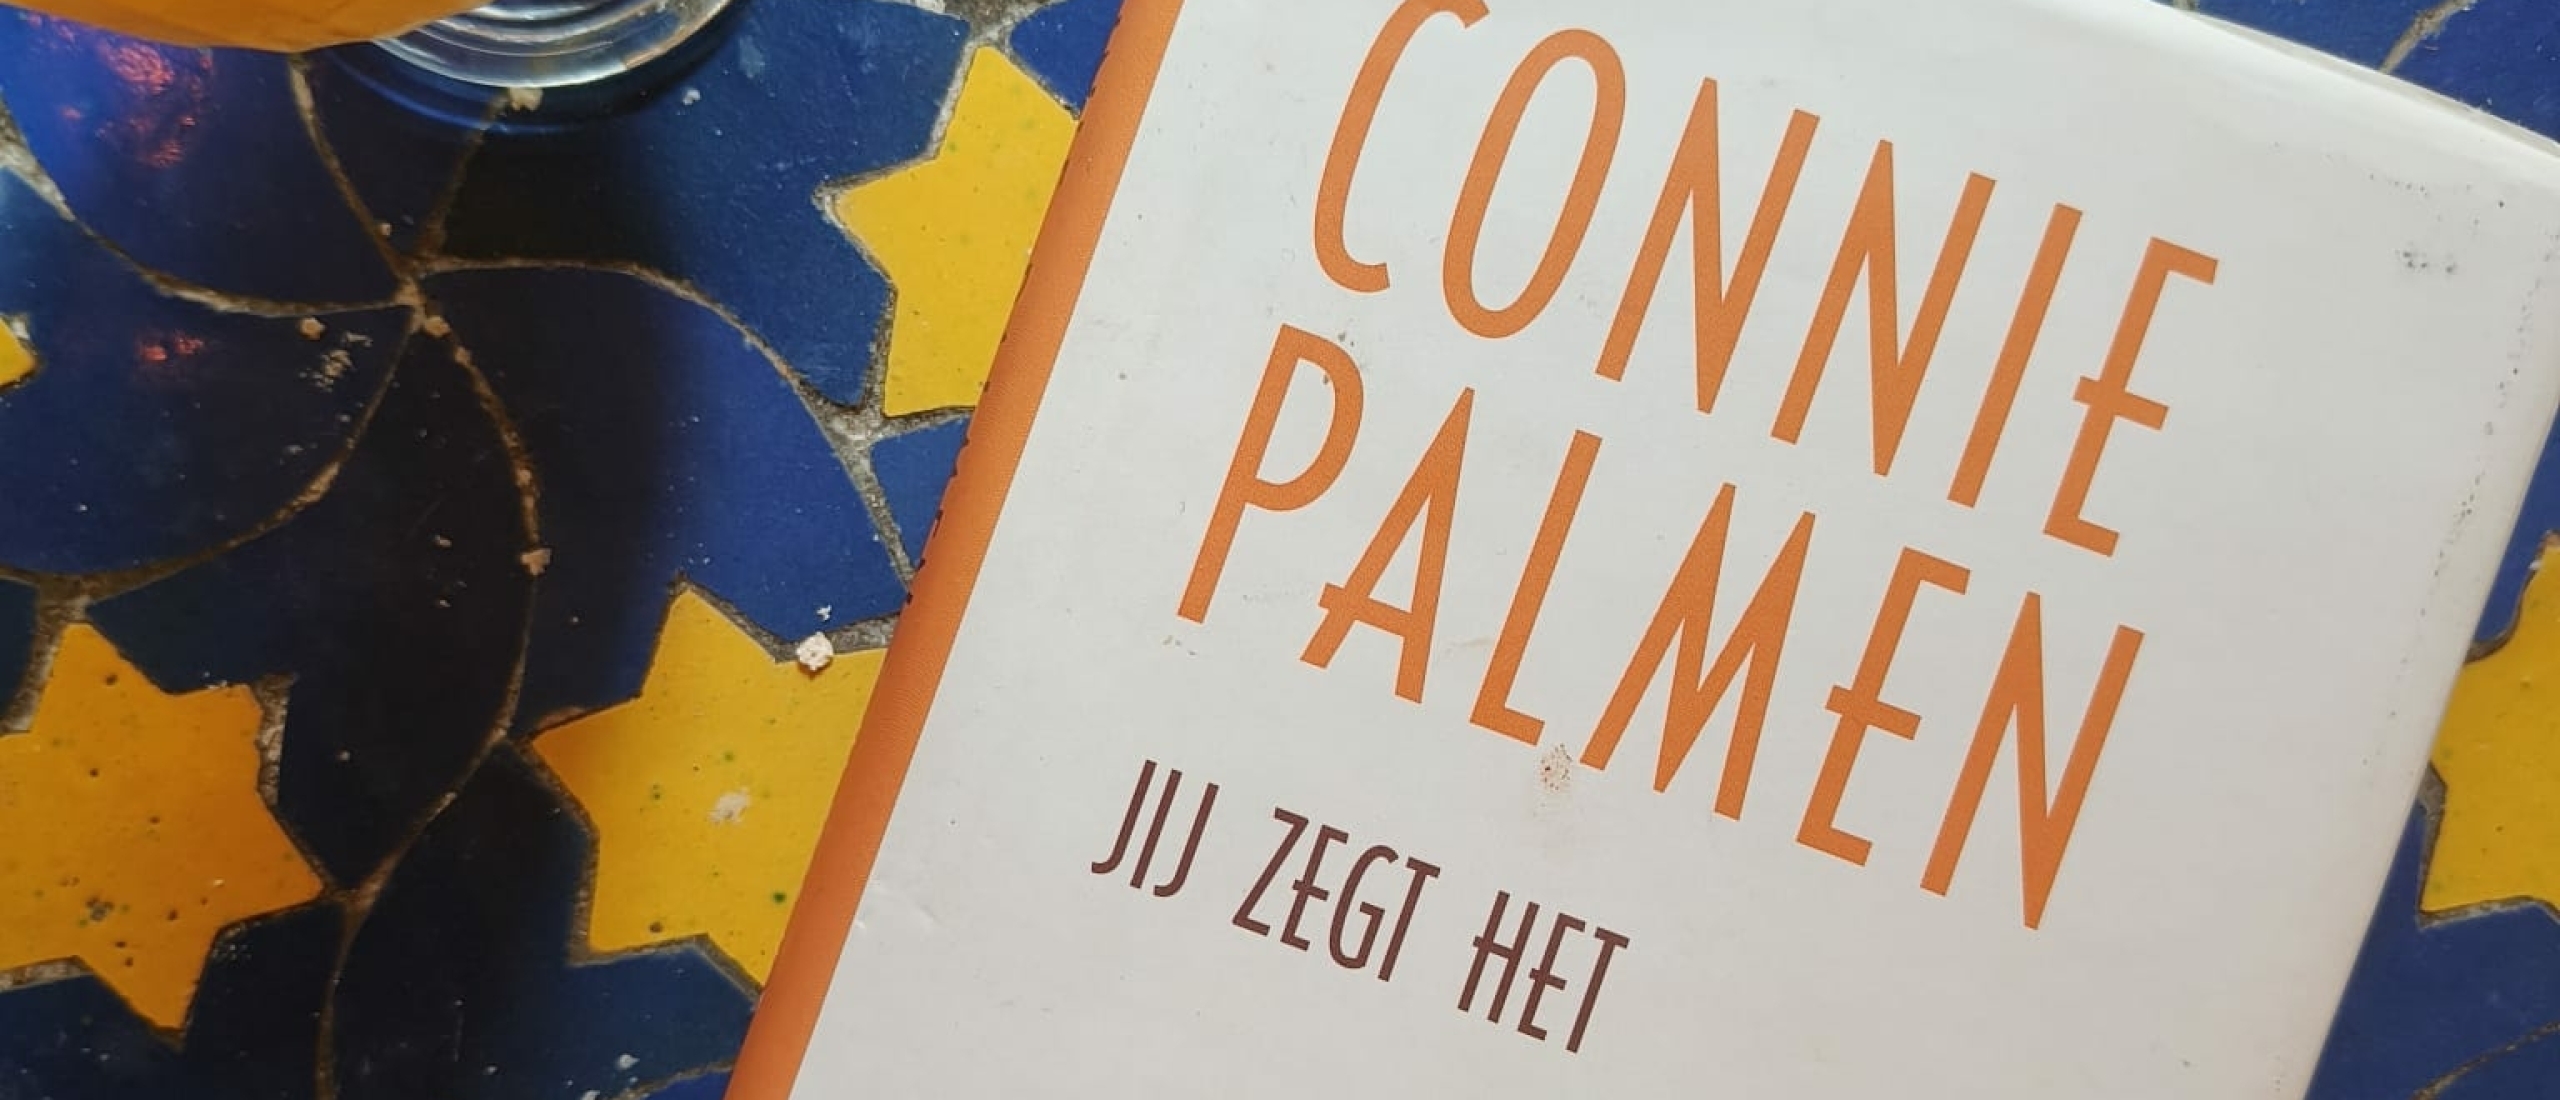 Boekentip: Jij zegt het van Connie Palmen